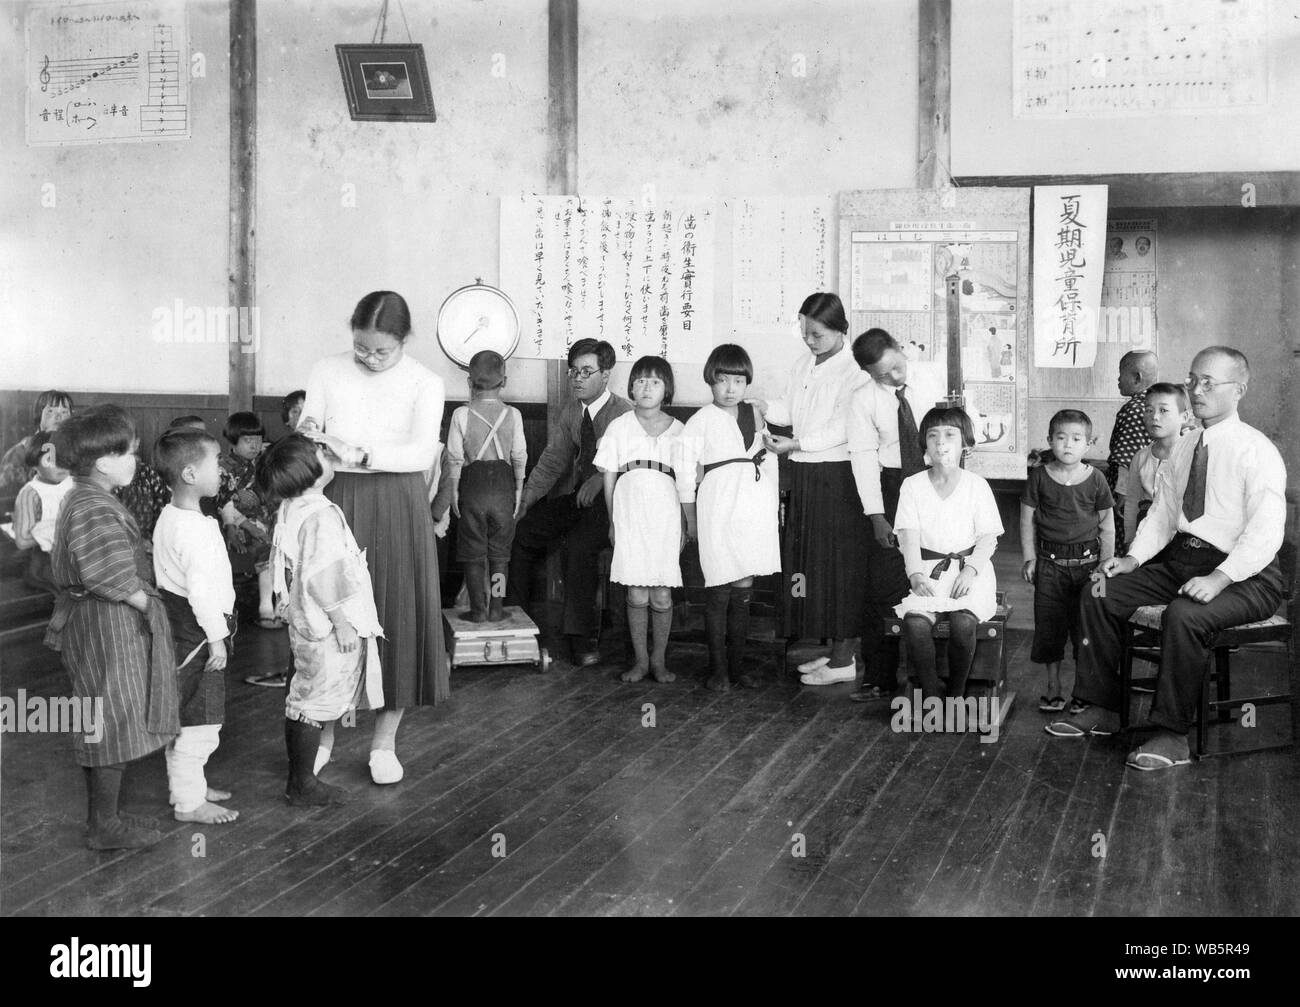 [ 1930 Giappone - Gli studenti della scuola elementare ] - Giapponese i bambini delle elementari di ottenere un health-check in una classe che sembra essere utilizzata per l'istruzione musicale. c1920s o 1930s. Xx secolo gelatina vintage silver stampa. Foto Stock